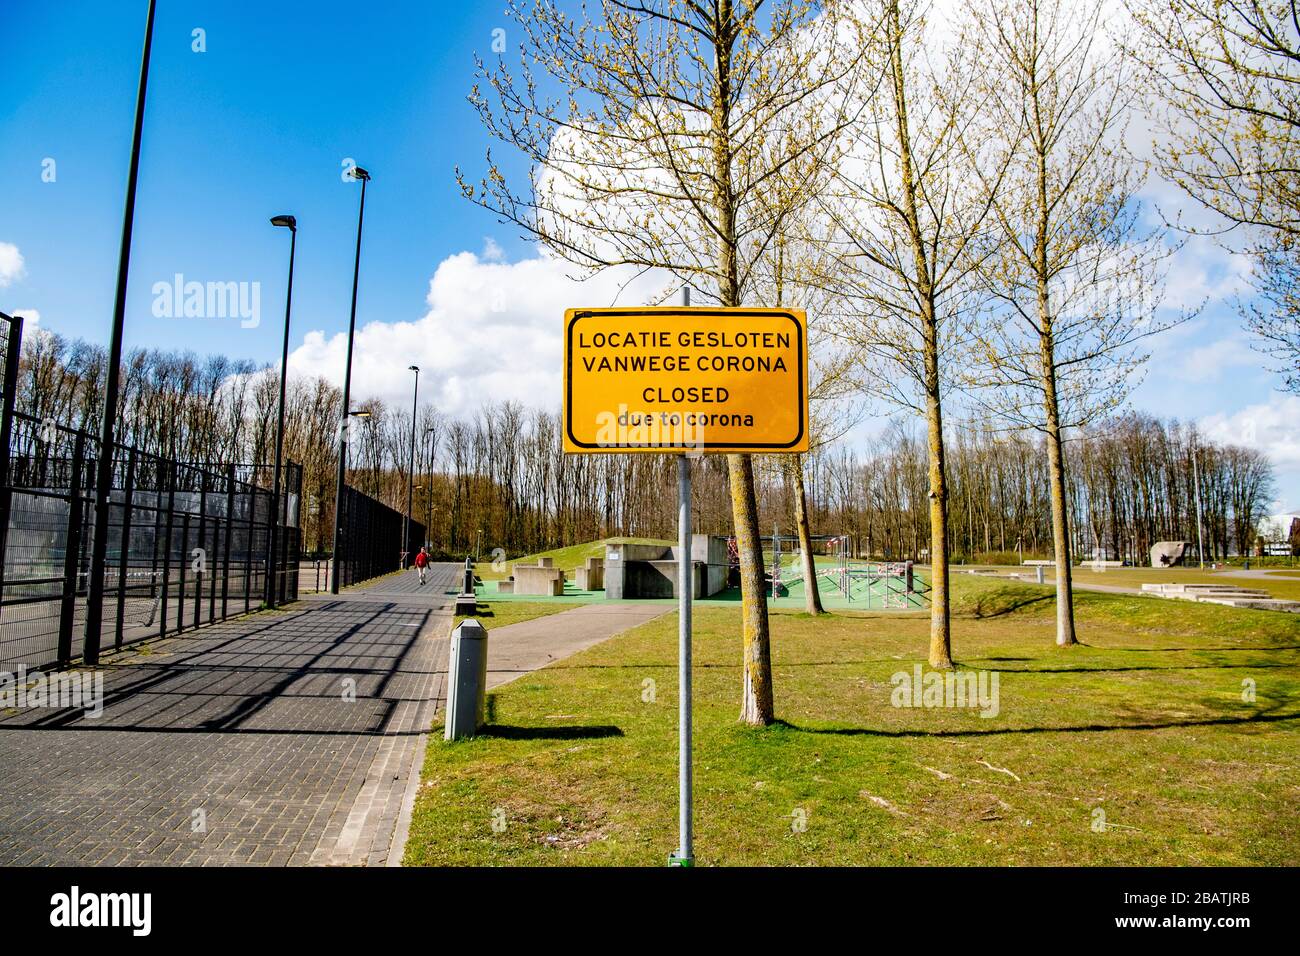 Cartelli chiusi visti nei parchi e nei parchi di Rotterdam a causa del virus della corona. Parchi e parchi sono stati chiusi come misura preventiva contro la pandemia di Covid-19. Foto Stock